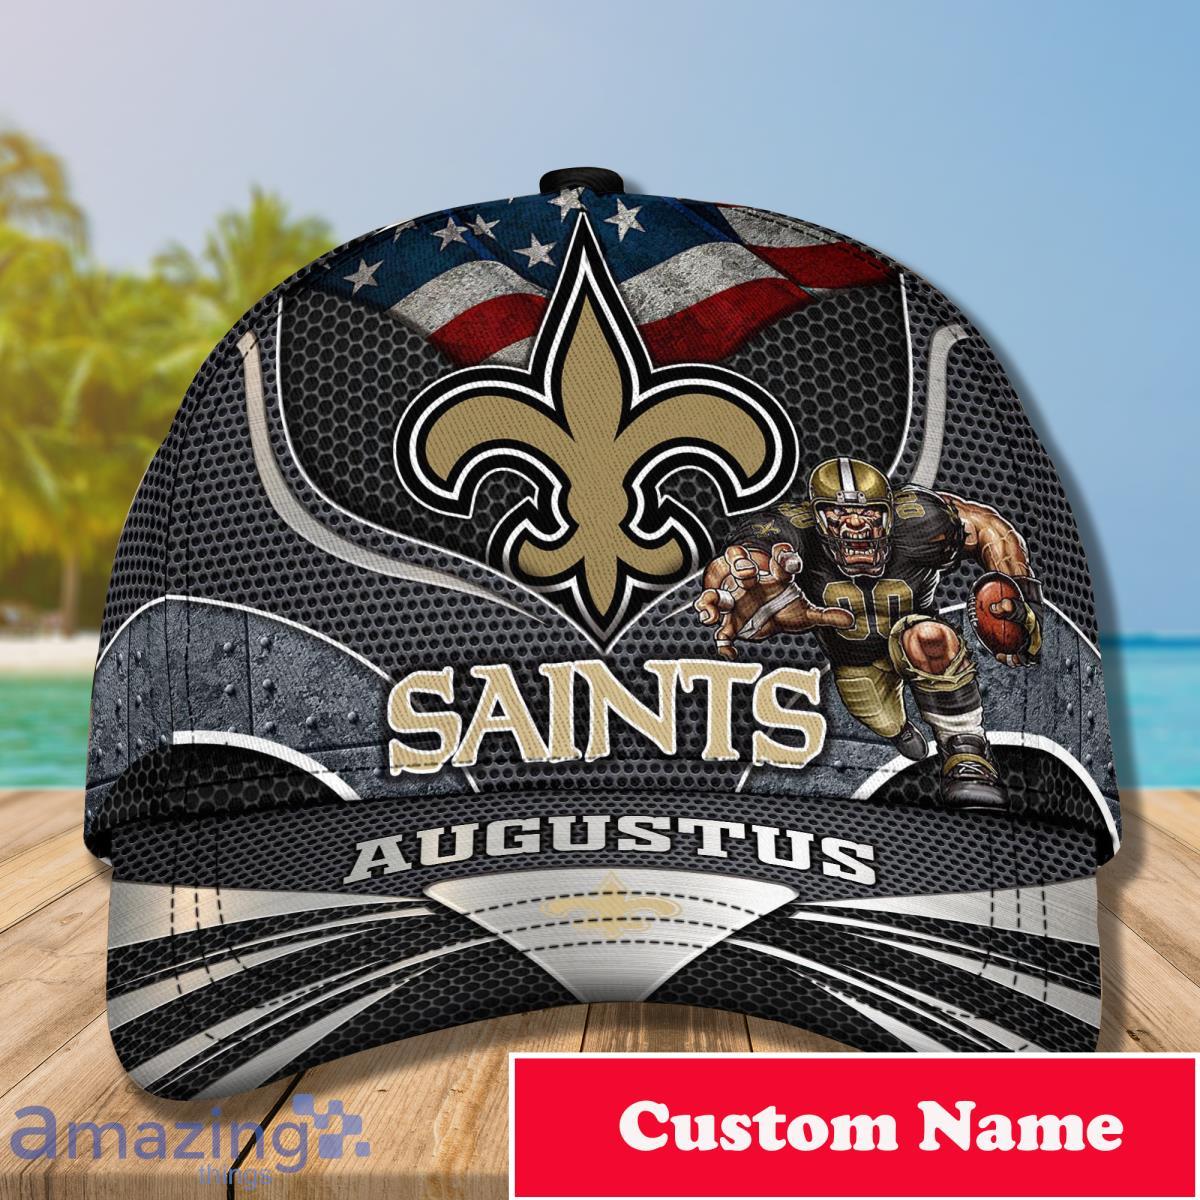 New Orleans Saints championship cap